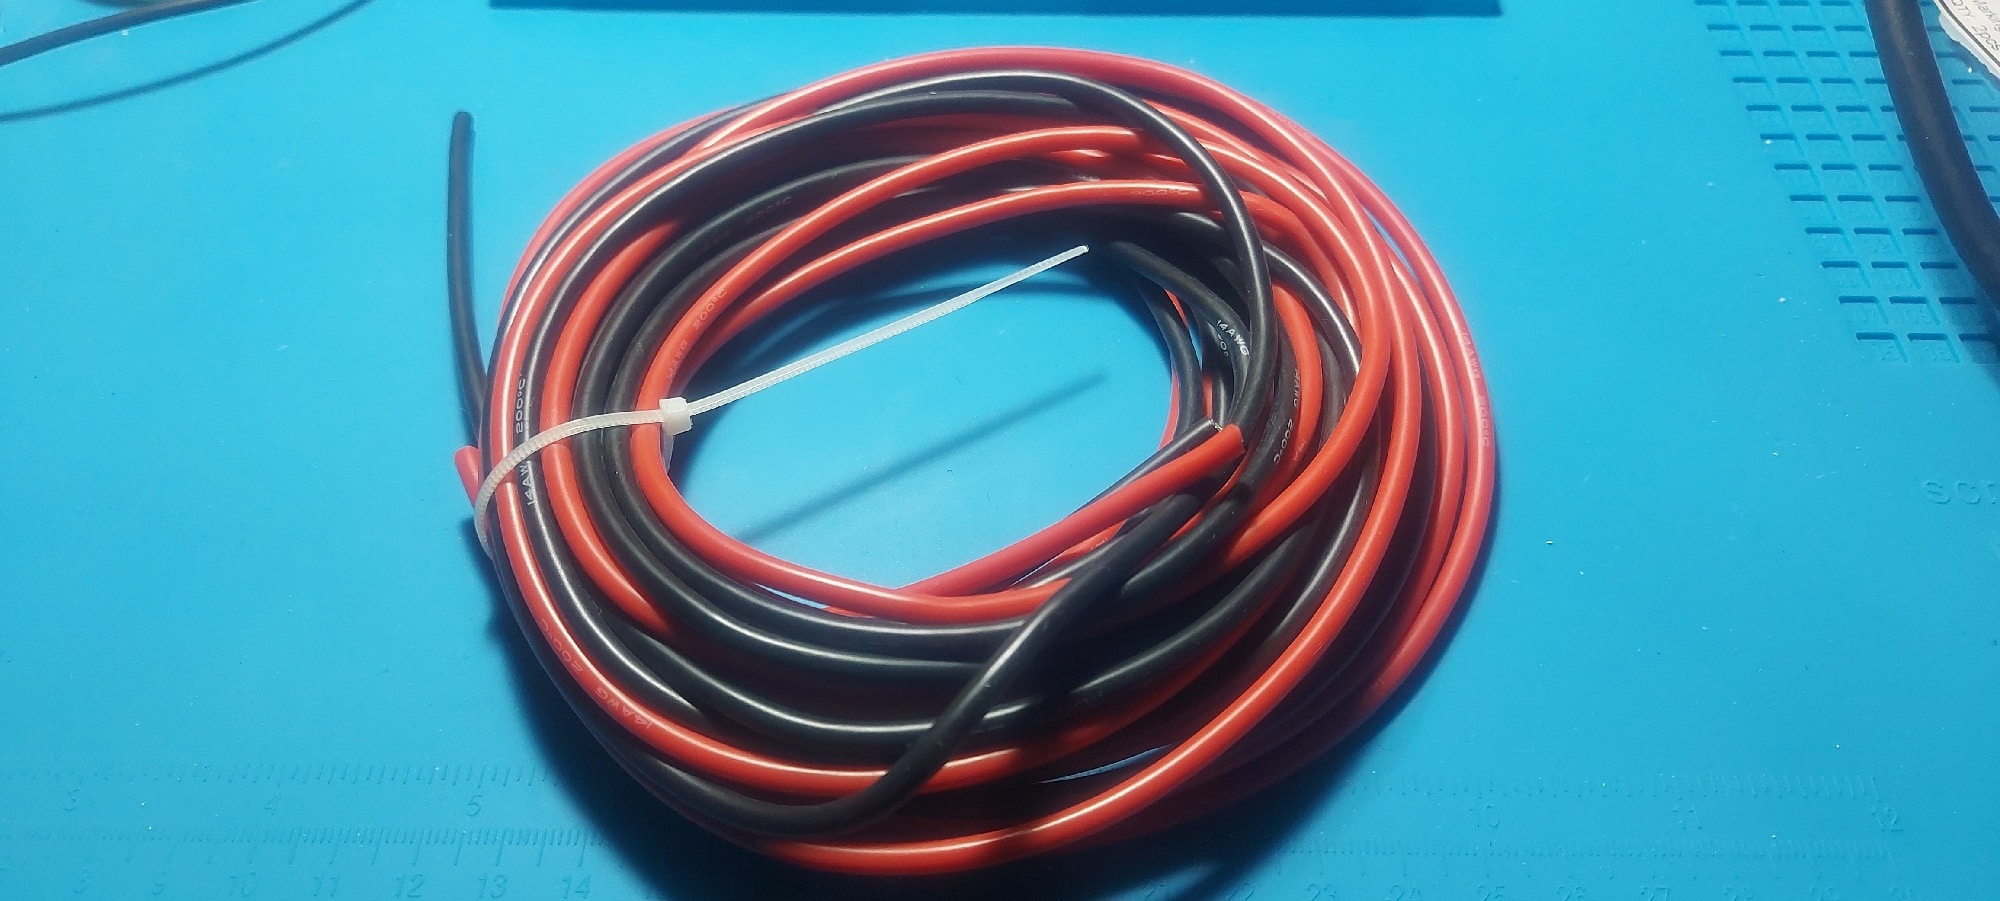 Cavo Silicone 10 AWG 5 Metri - Nero/Rosso, Rame Stagnato, Alta Durabilità